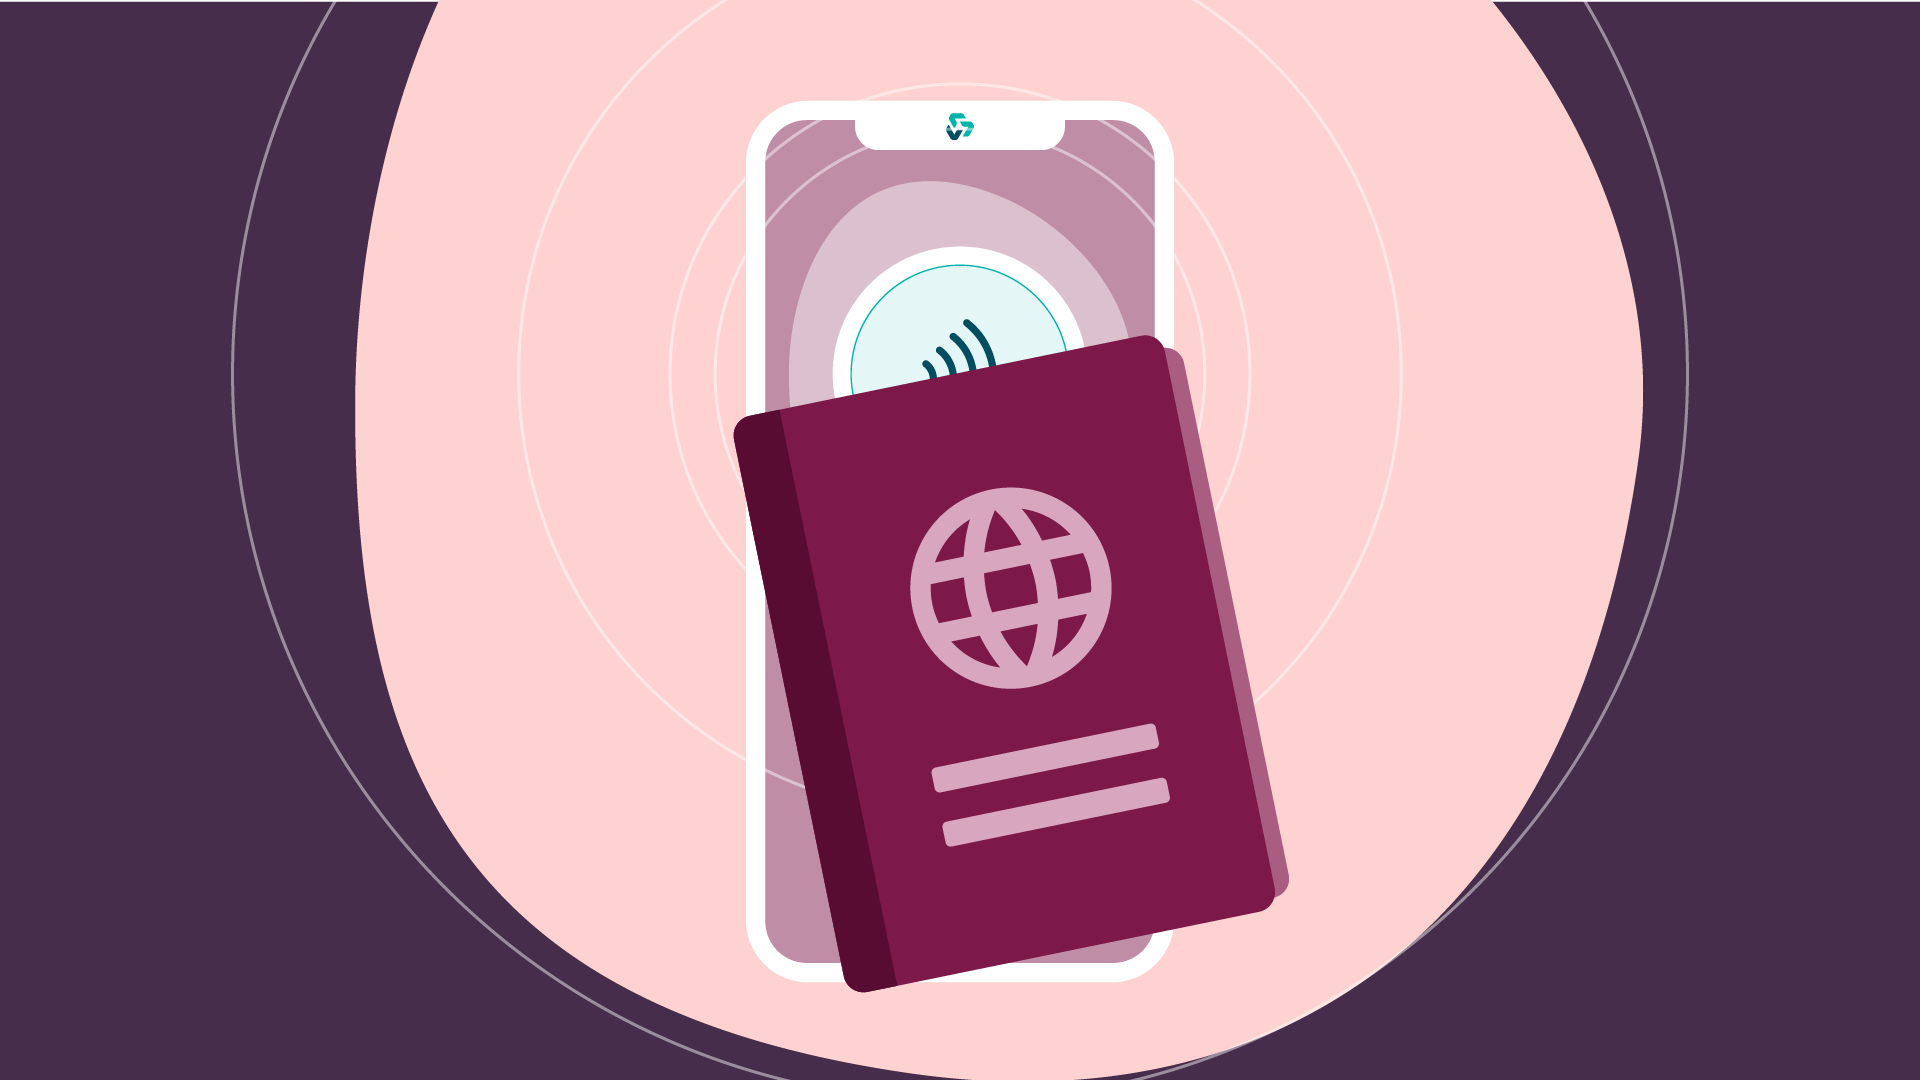 Passport and smartphone graphic